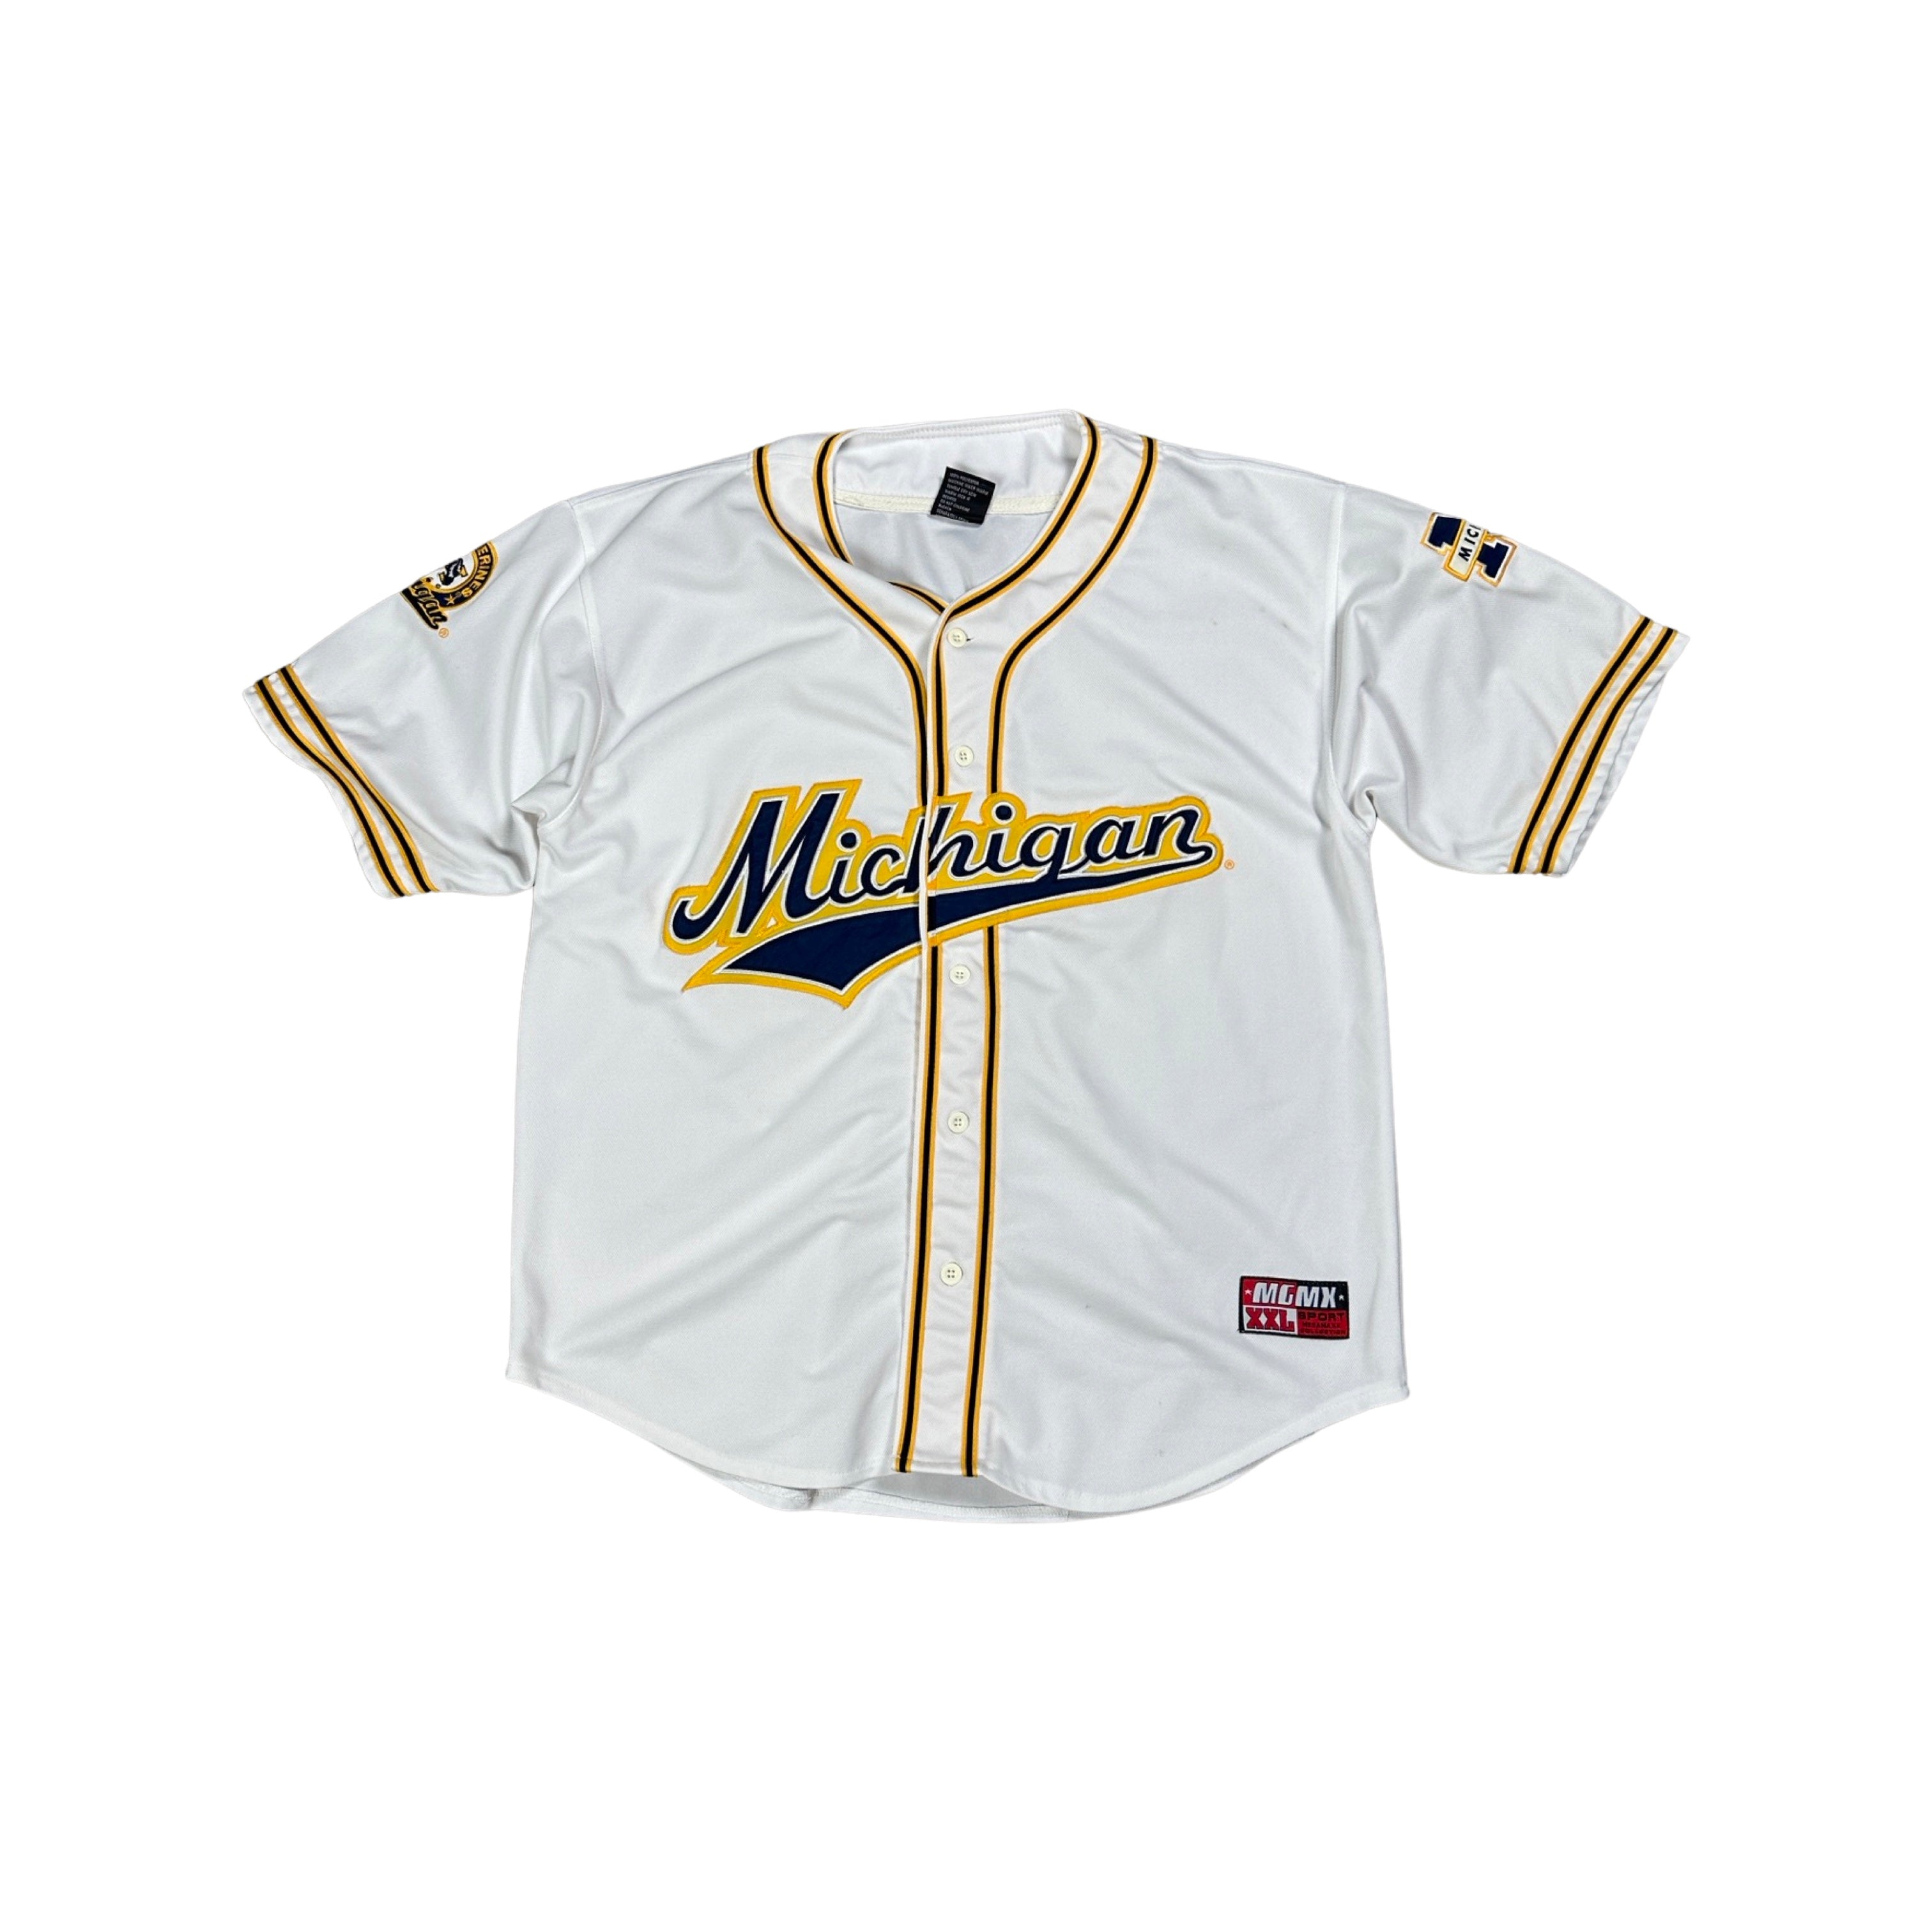 Michigan Baseball Jersey 2000s (XXL)